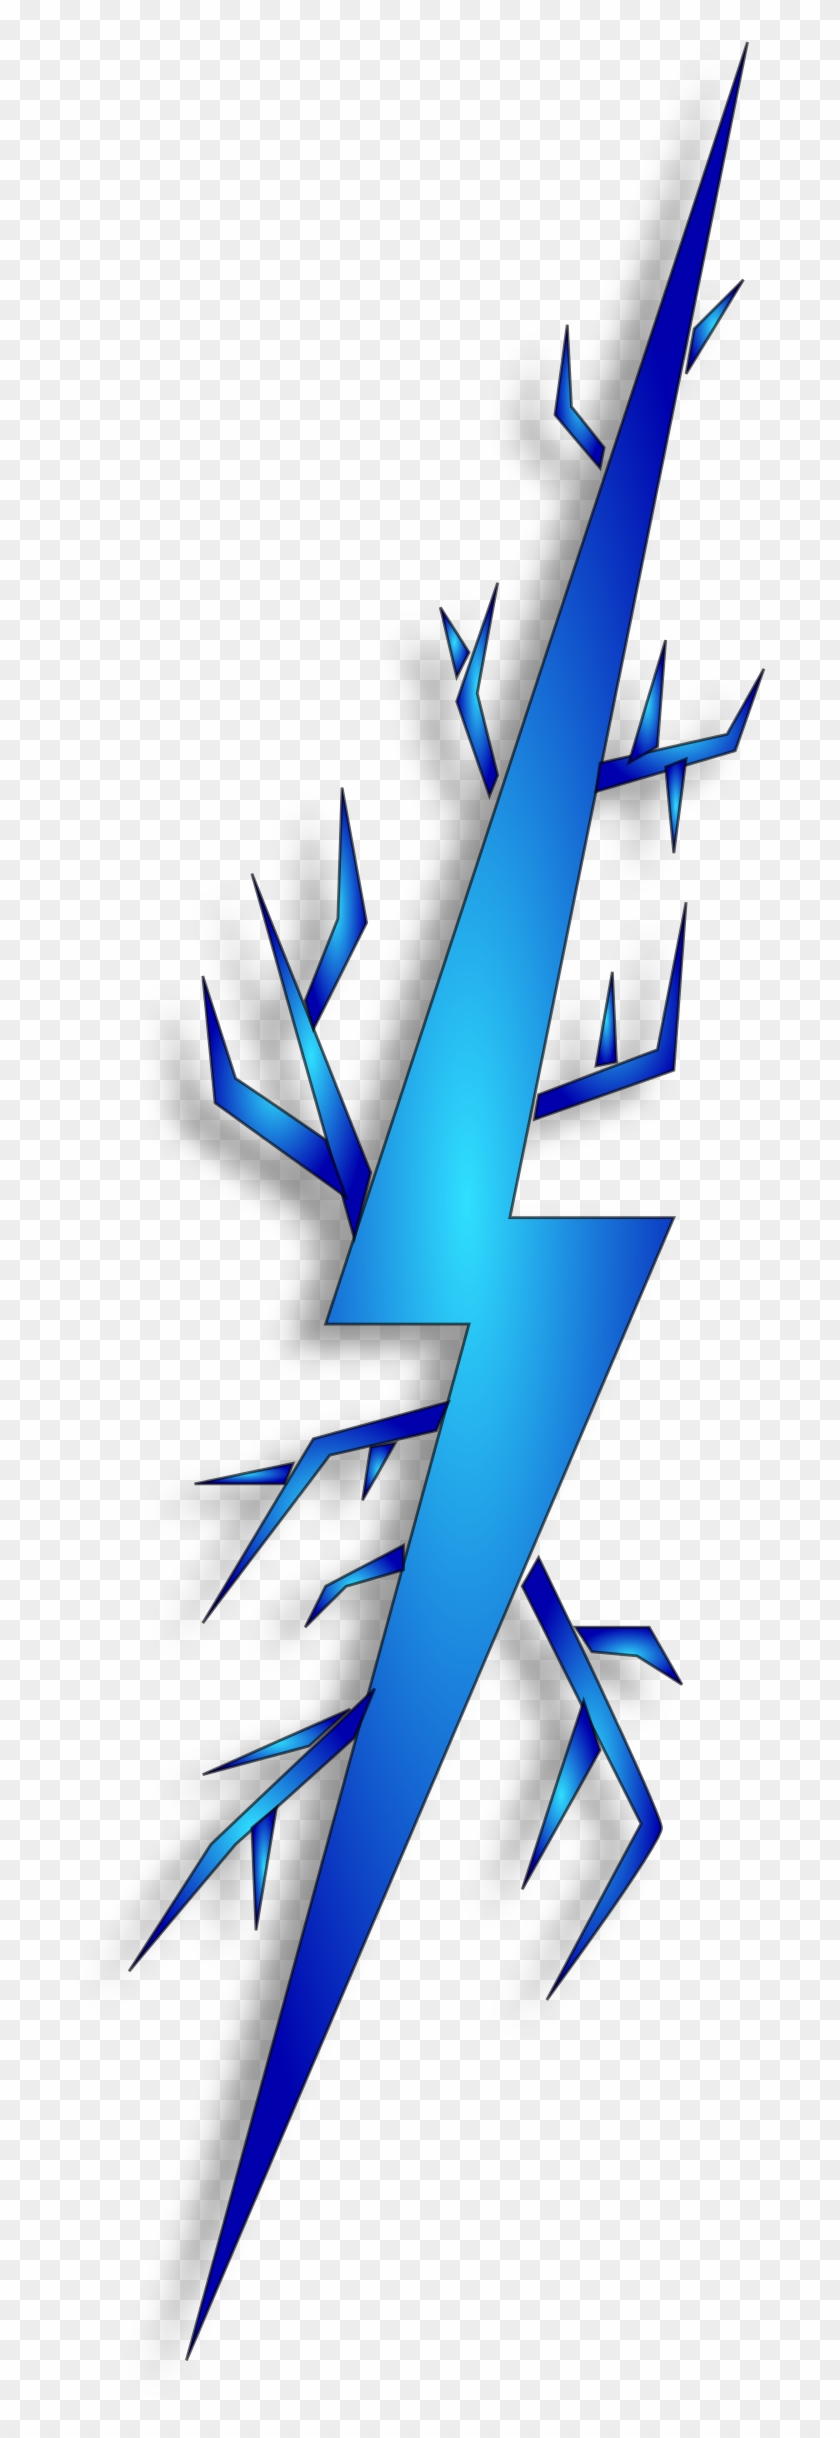 Free Clip Art Of Lightning Clipart - Spark Clip Art #211080